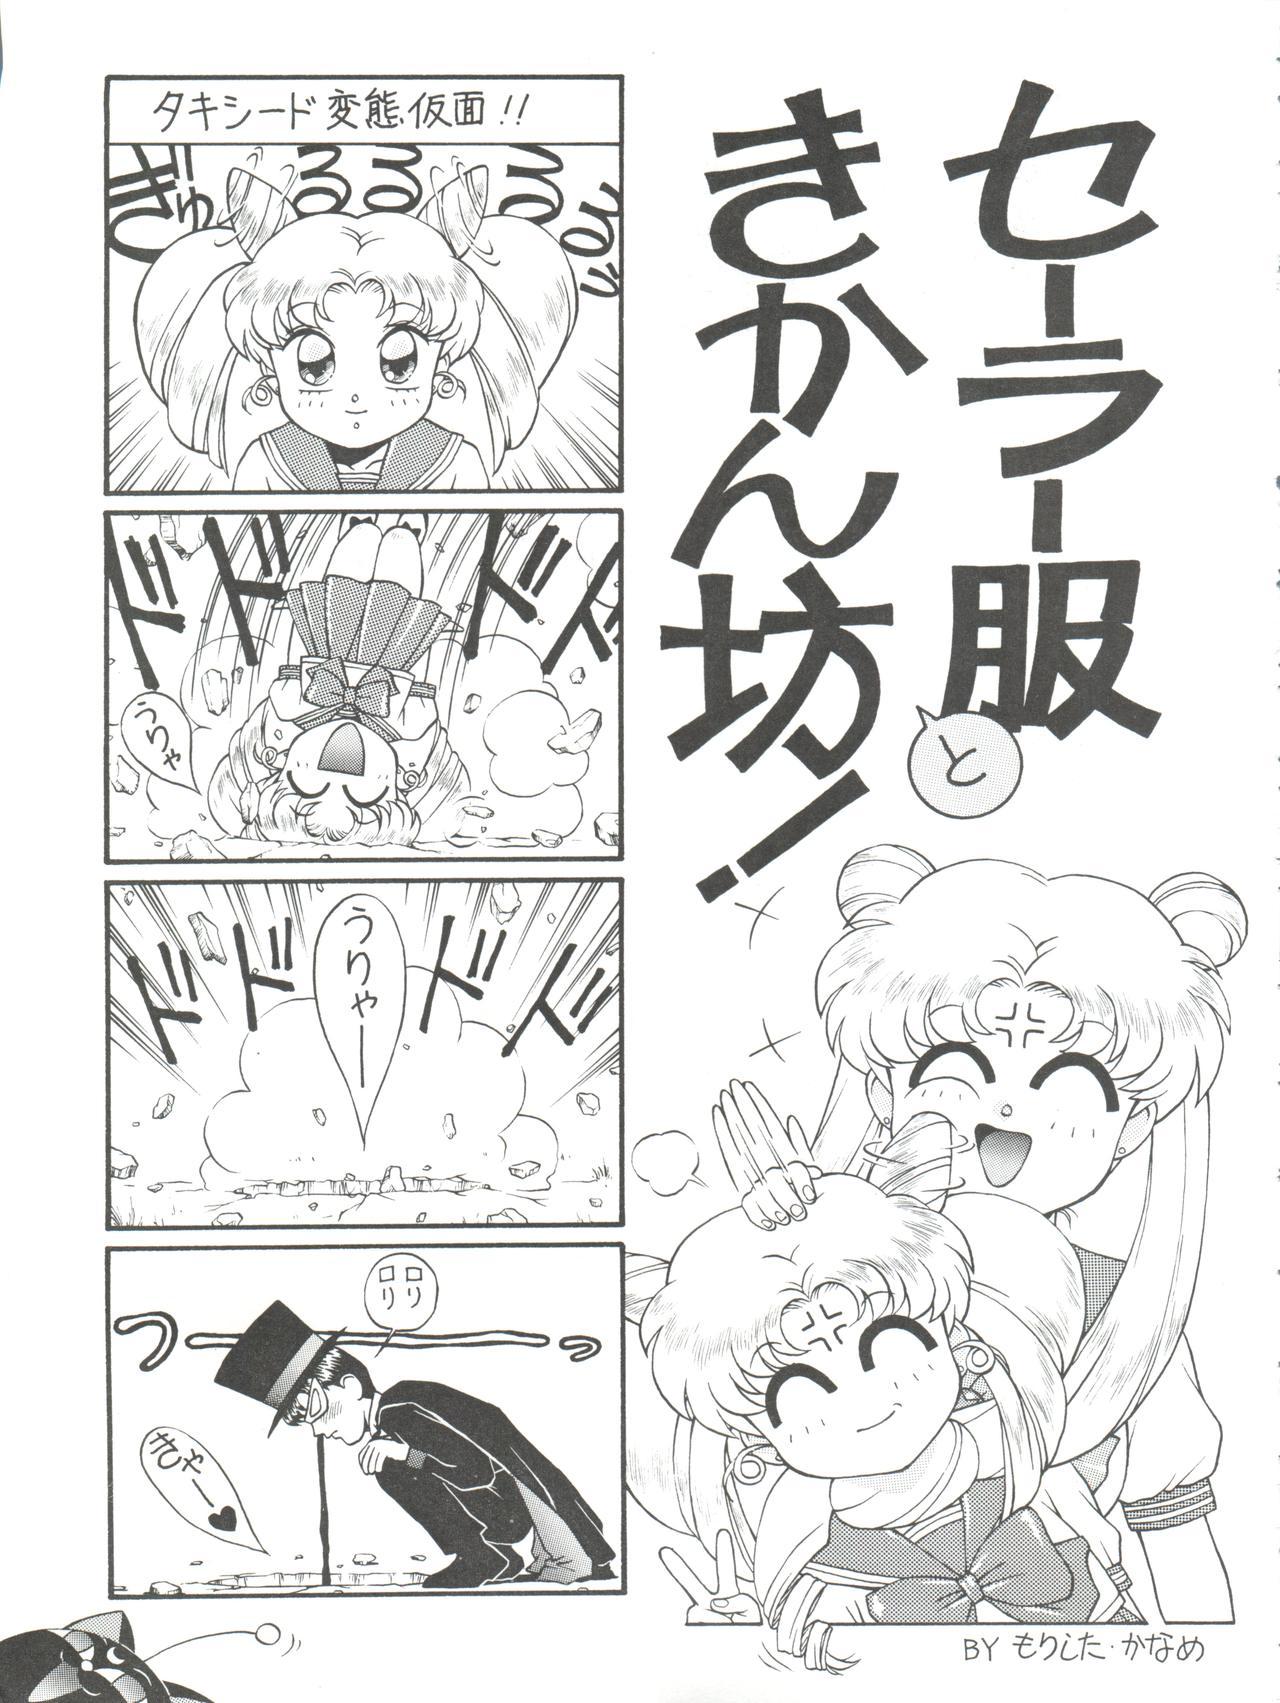 Domination NANIWA-YA FINAL DRESS UP! - Sailor moon Slayers Hime-chans ribbon Ng knight lamune and 40 Brave express might gaine Asslick - Page 11